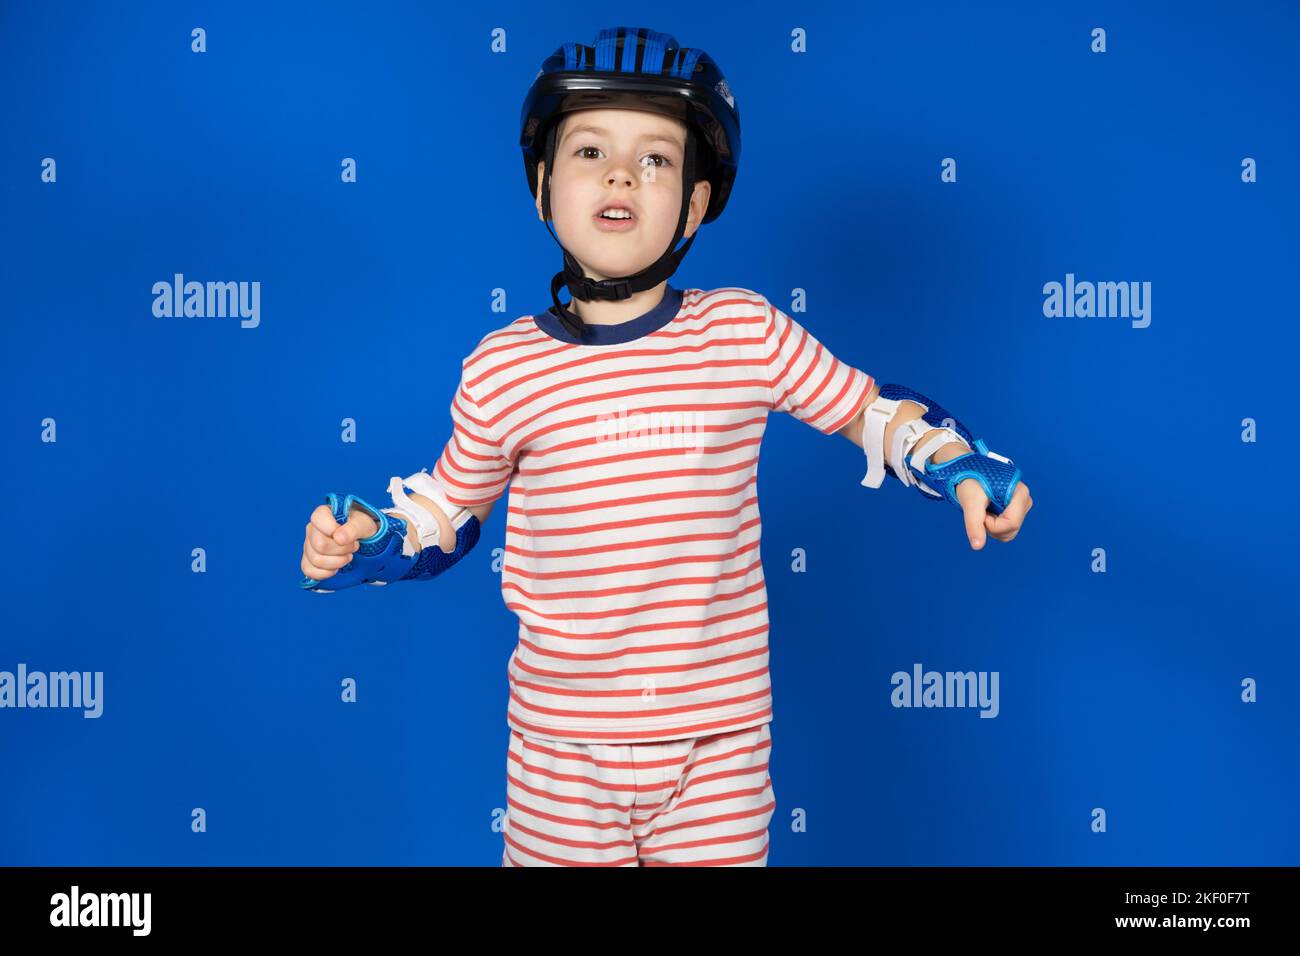 Un joyeux garçon dans un casque de protection, des protège-coudes et des gants sur fond bleu. Protection lors de la conduite d'un vélo, d'un skateboard ou d'un patin à roulettes Banque D'Images